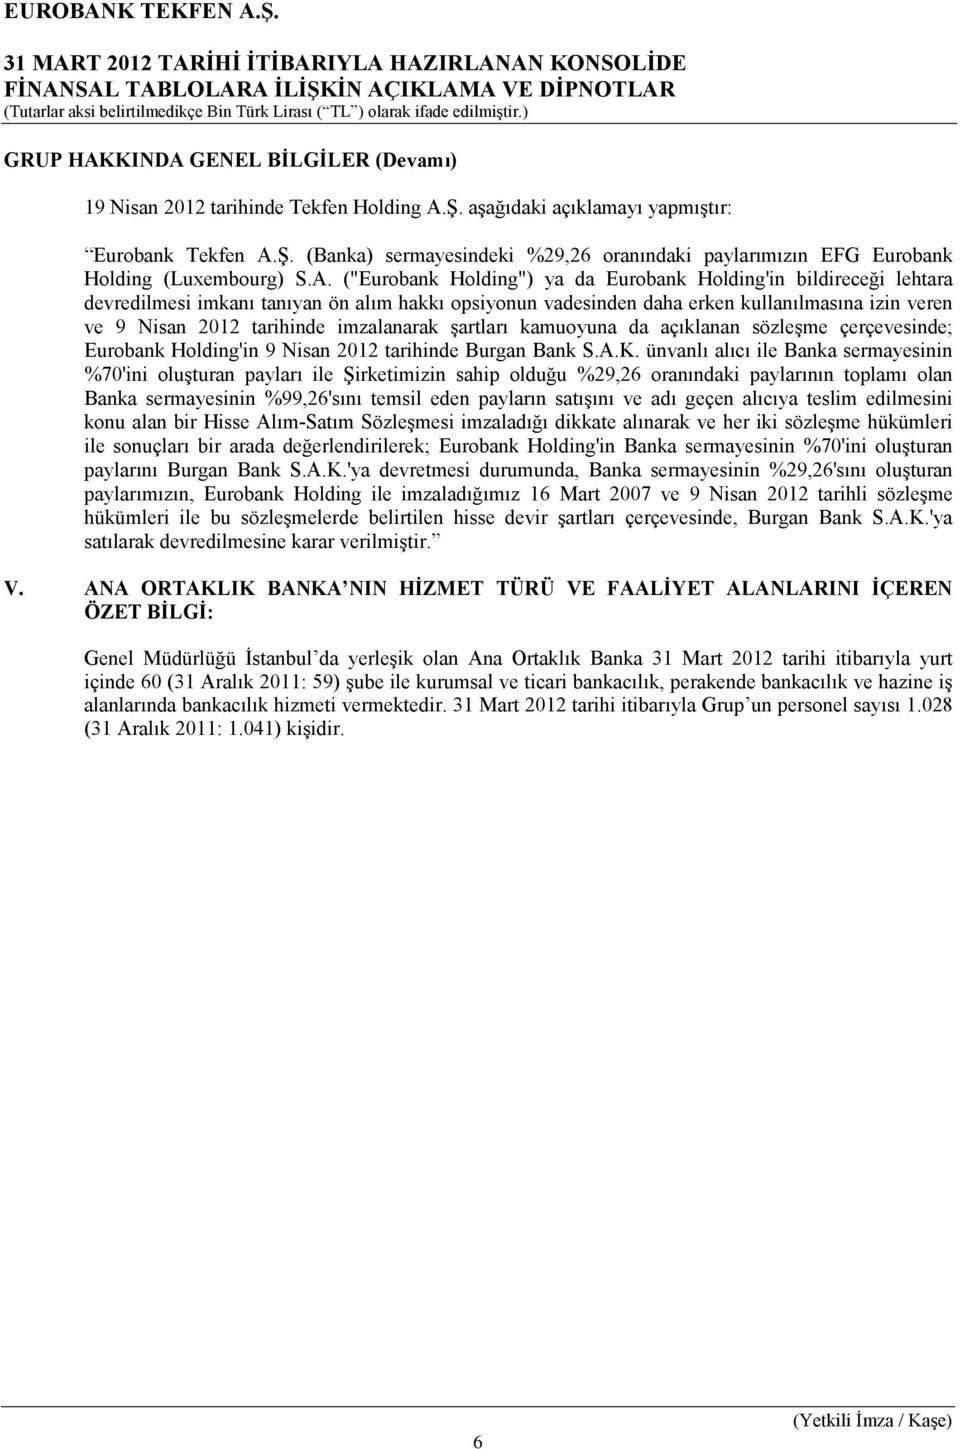 imzalanarak şartları kamuoyuna da açıklanan sözleşme çerçevesinde; Eurobank Holding'in 9 Nisan 2012 tarihinde Burgan Bank S.A.K.